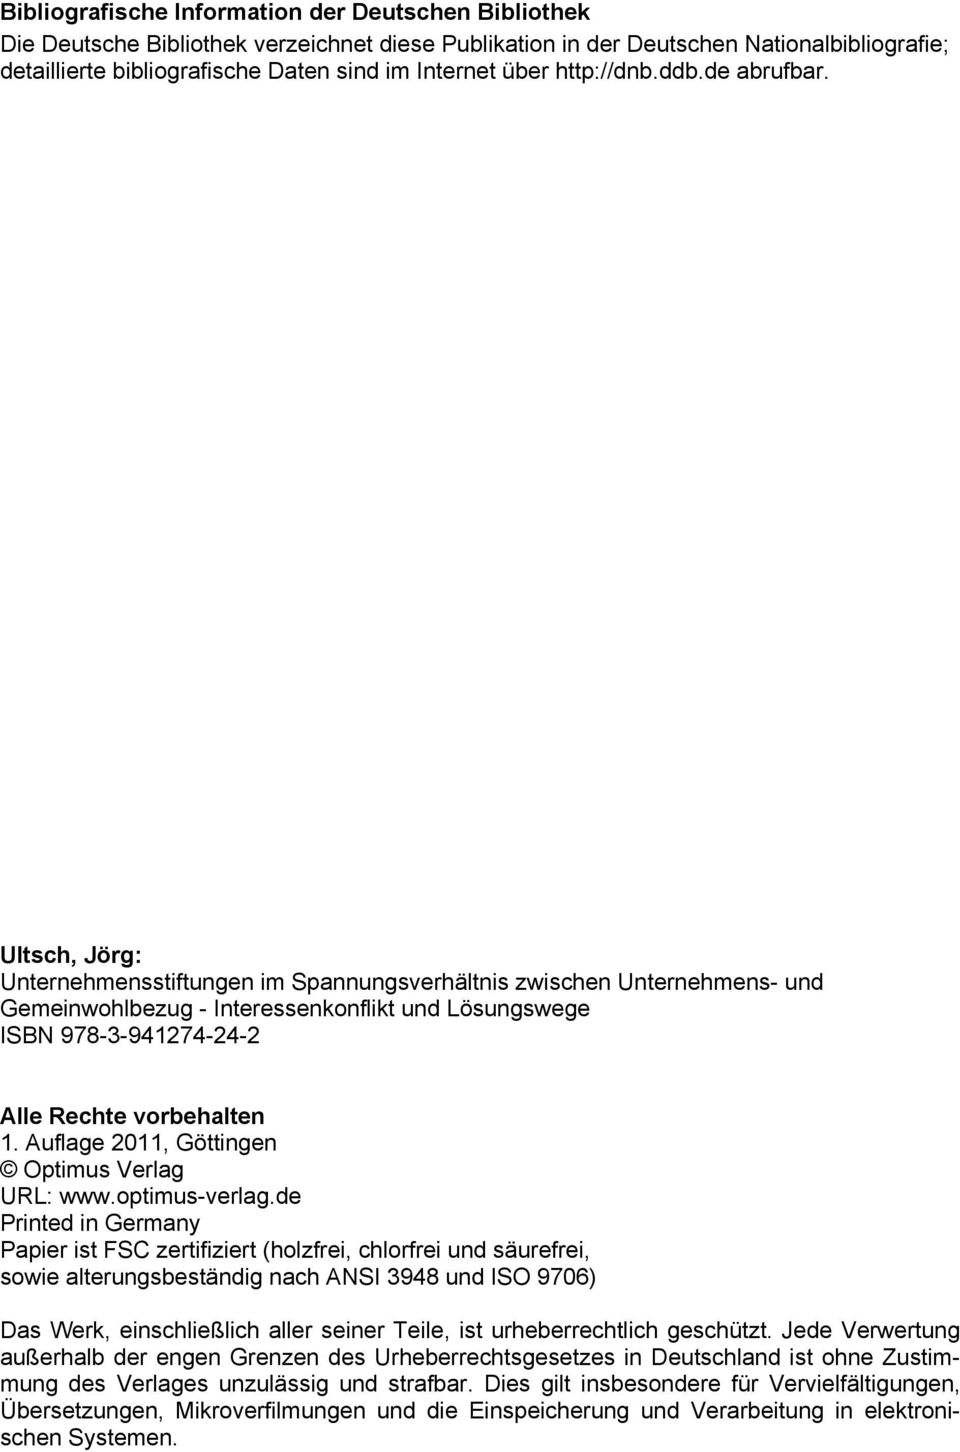 Ultsch, Jörg: Unternehmensstiftungen im Spannungsverhältnis zwischen Unternehmens- und Gemeinwohlbezug - Interessenkonflikt und Lösungswege ISBN 978-3-941274-24-2 Alle Rechte vorbehalten 1.